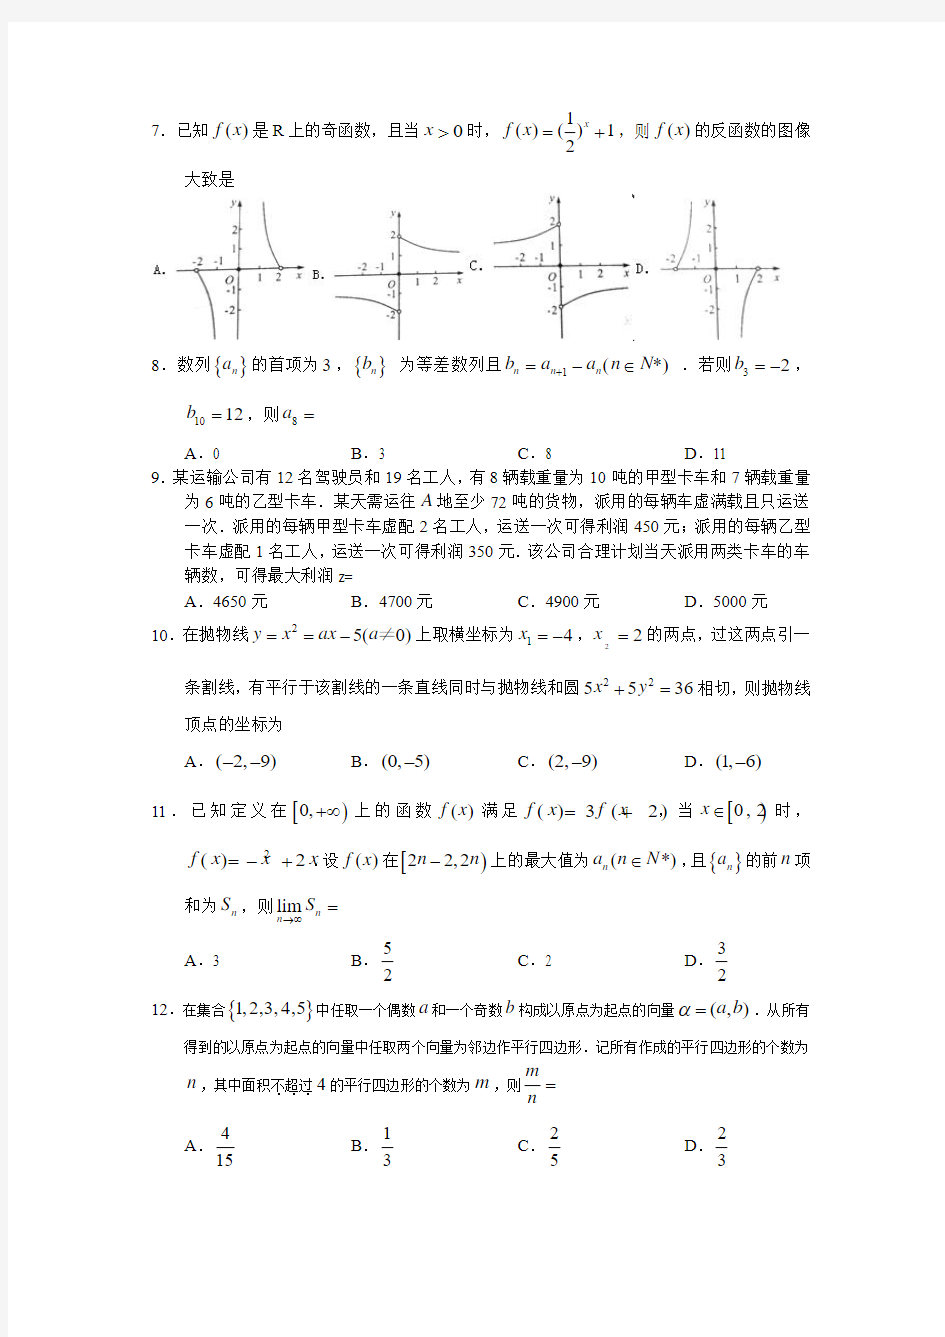 2011年高考理科数学(四川卷)